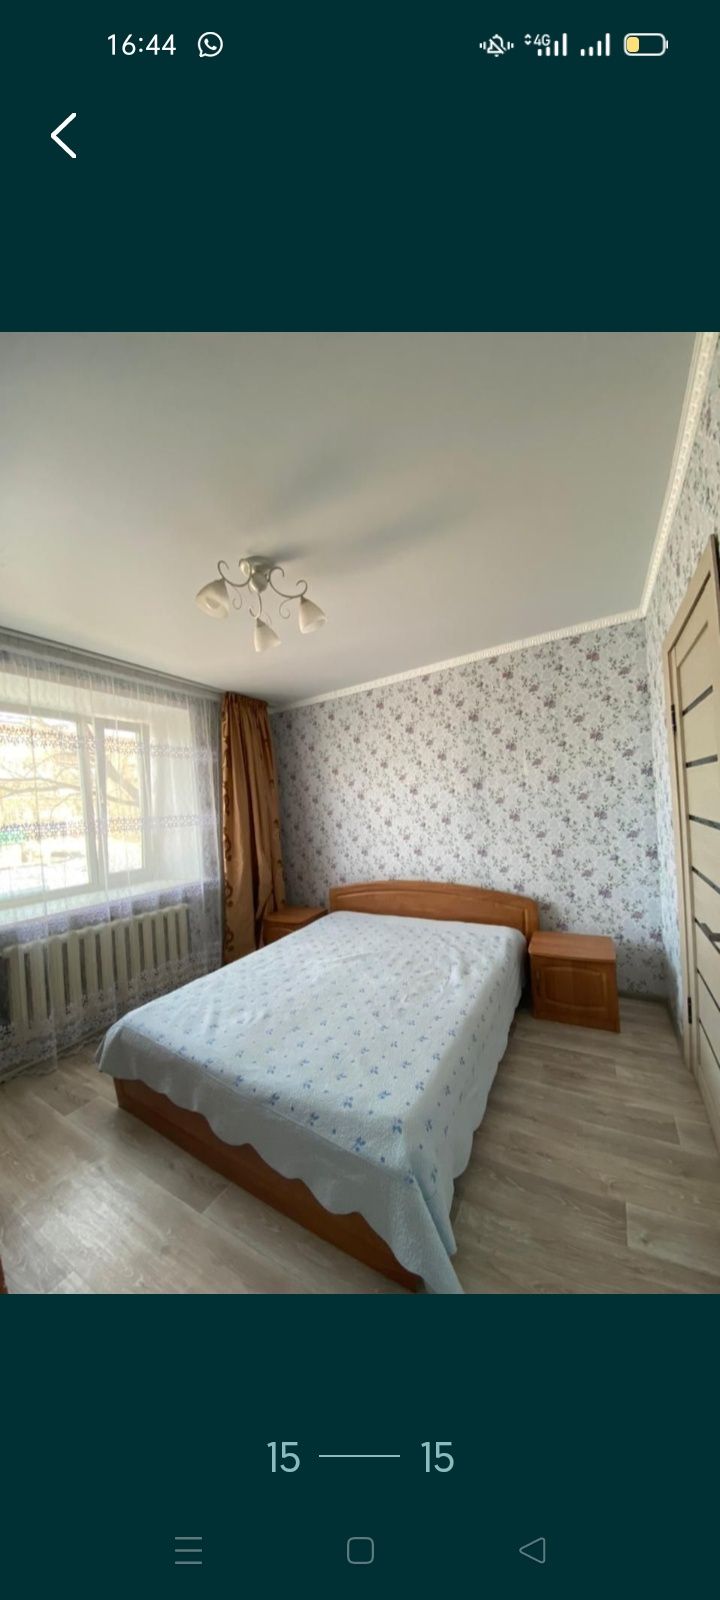 Сдам 123 комнатные квартиры в центре города щучинск чисто уютно